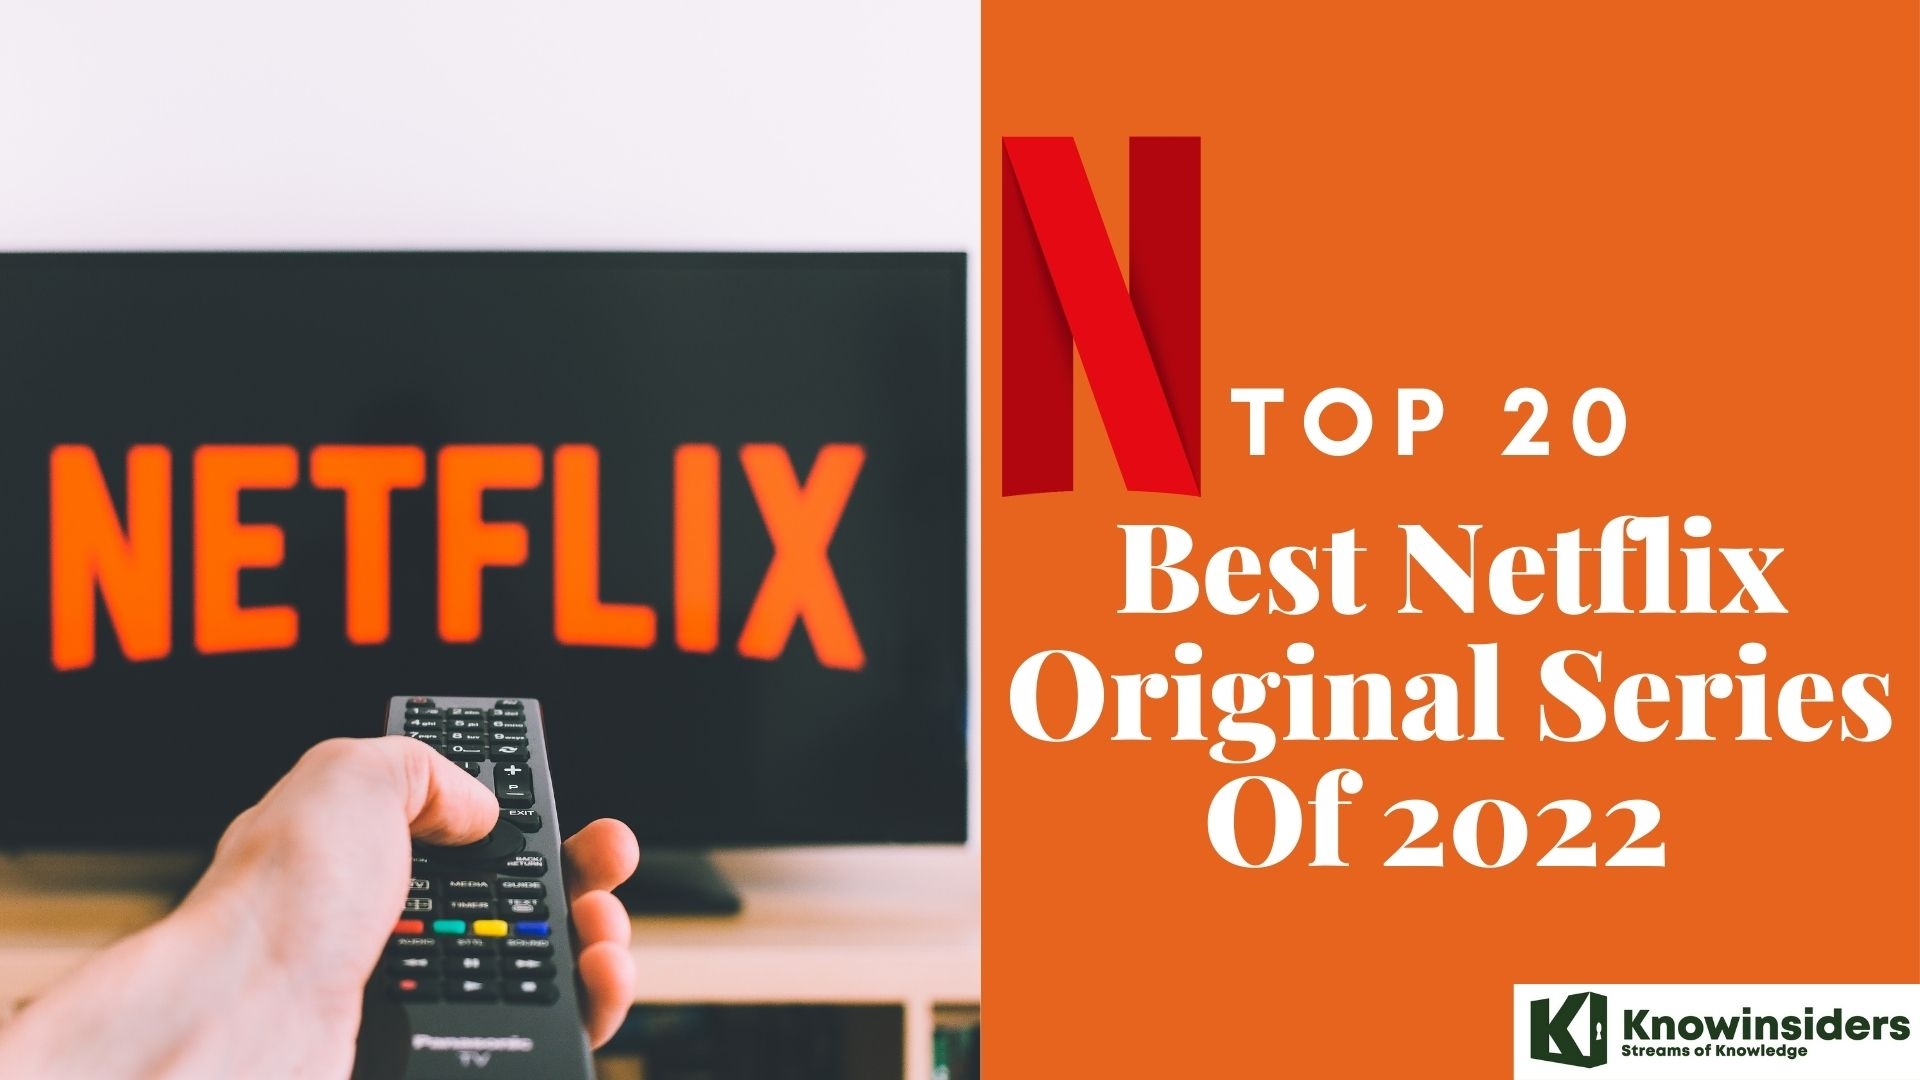 Top 20 Best Netflix Original Series in 2022